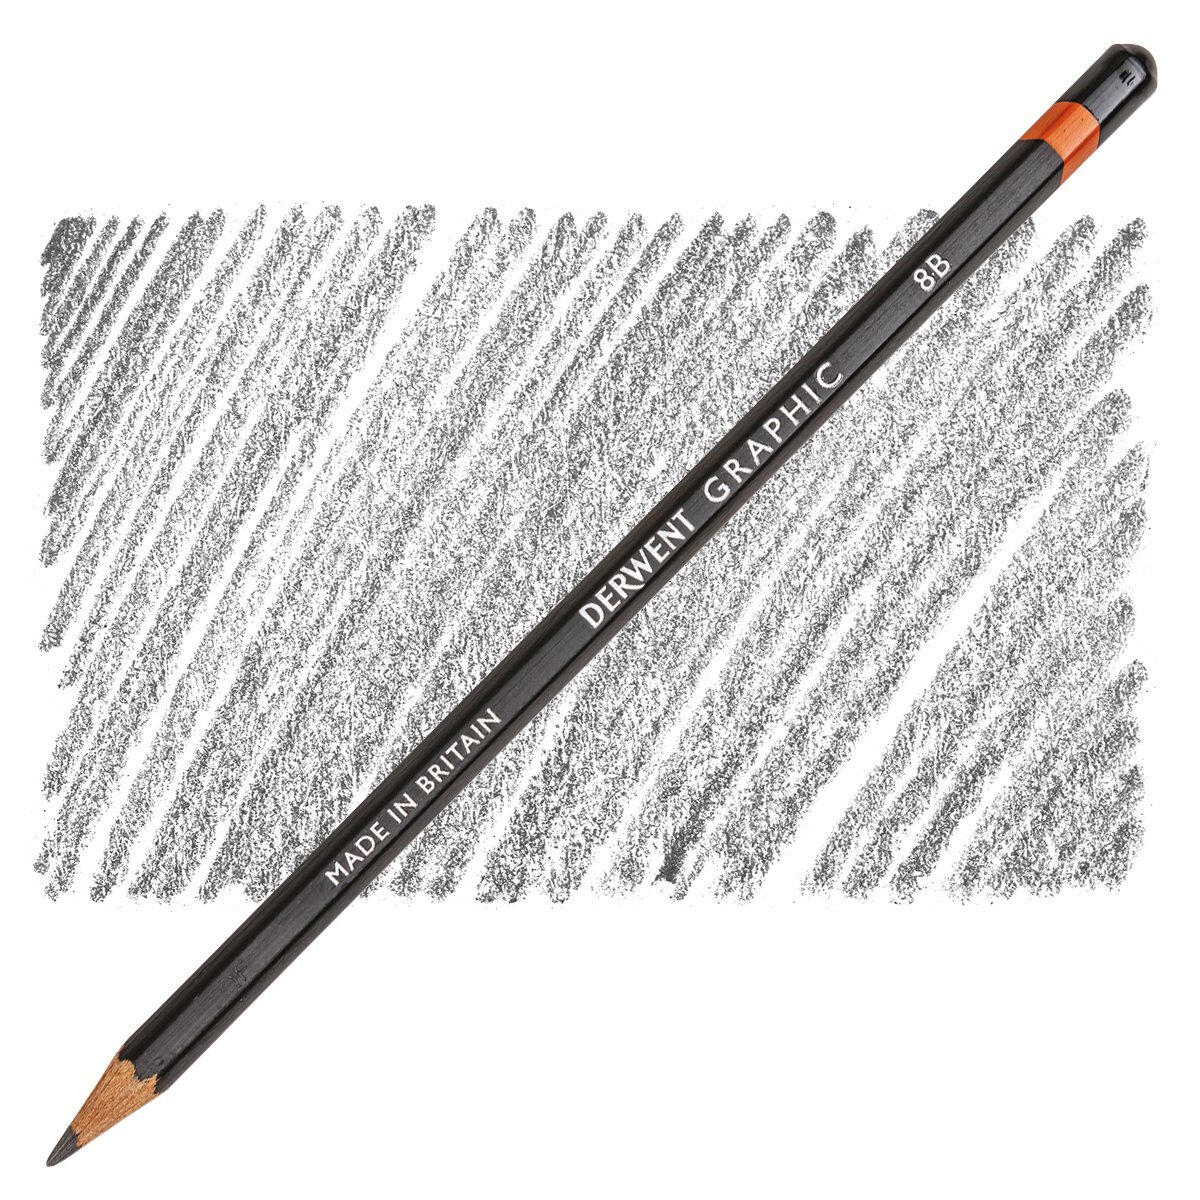 Derwent Graphic Pencil - Soft 4B, 3 Pack